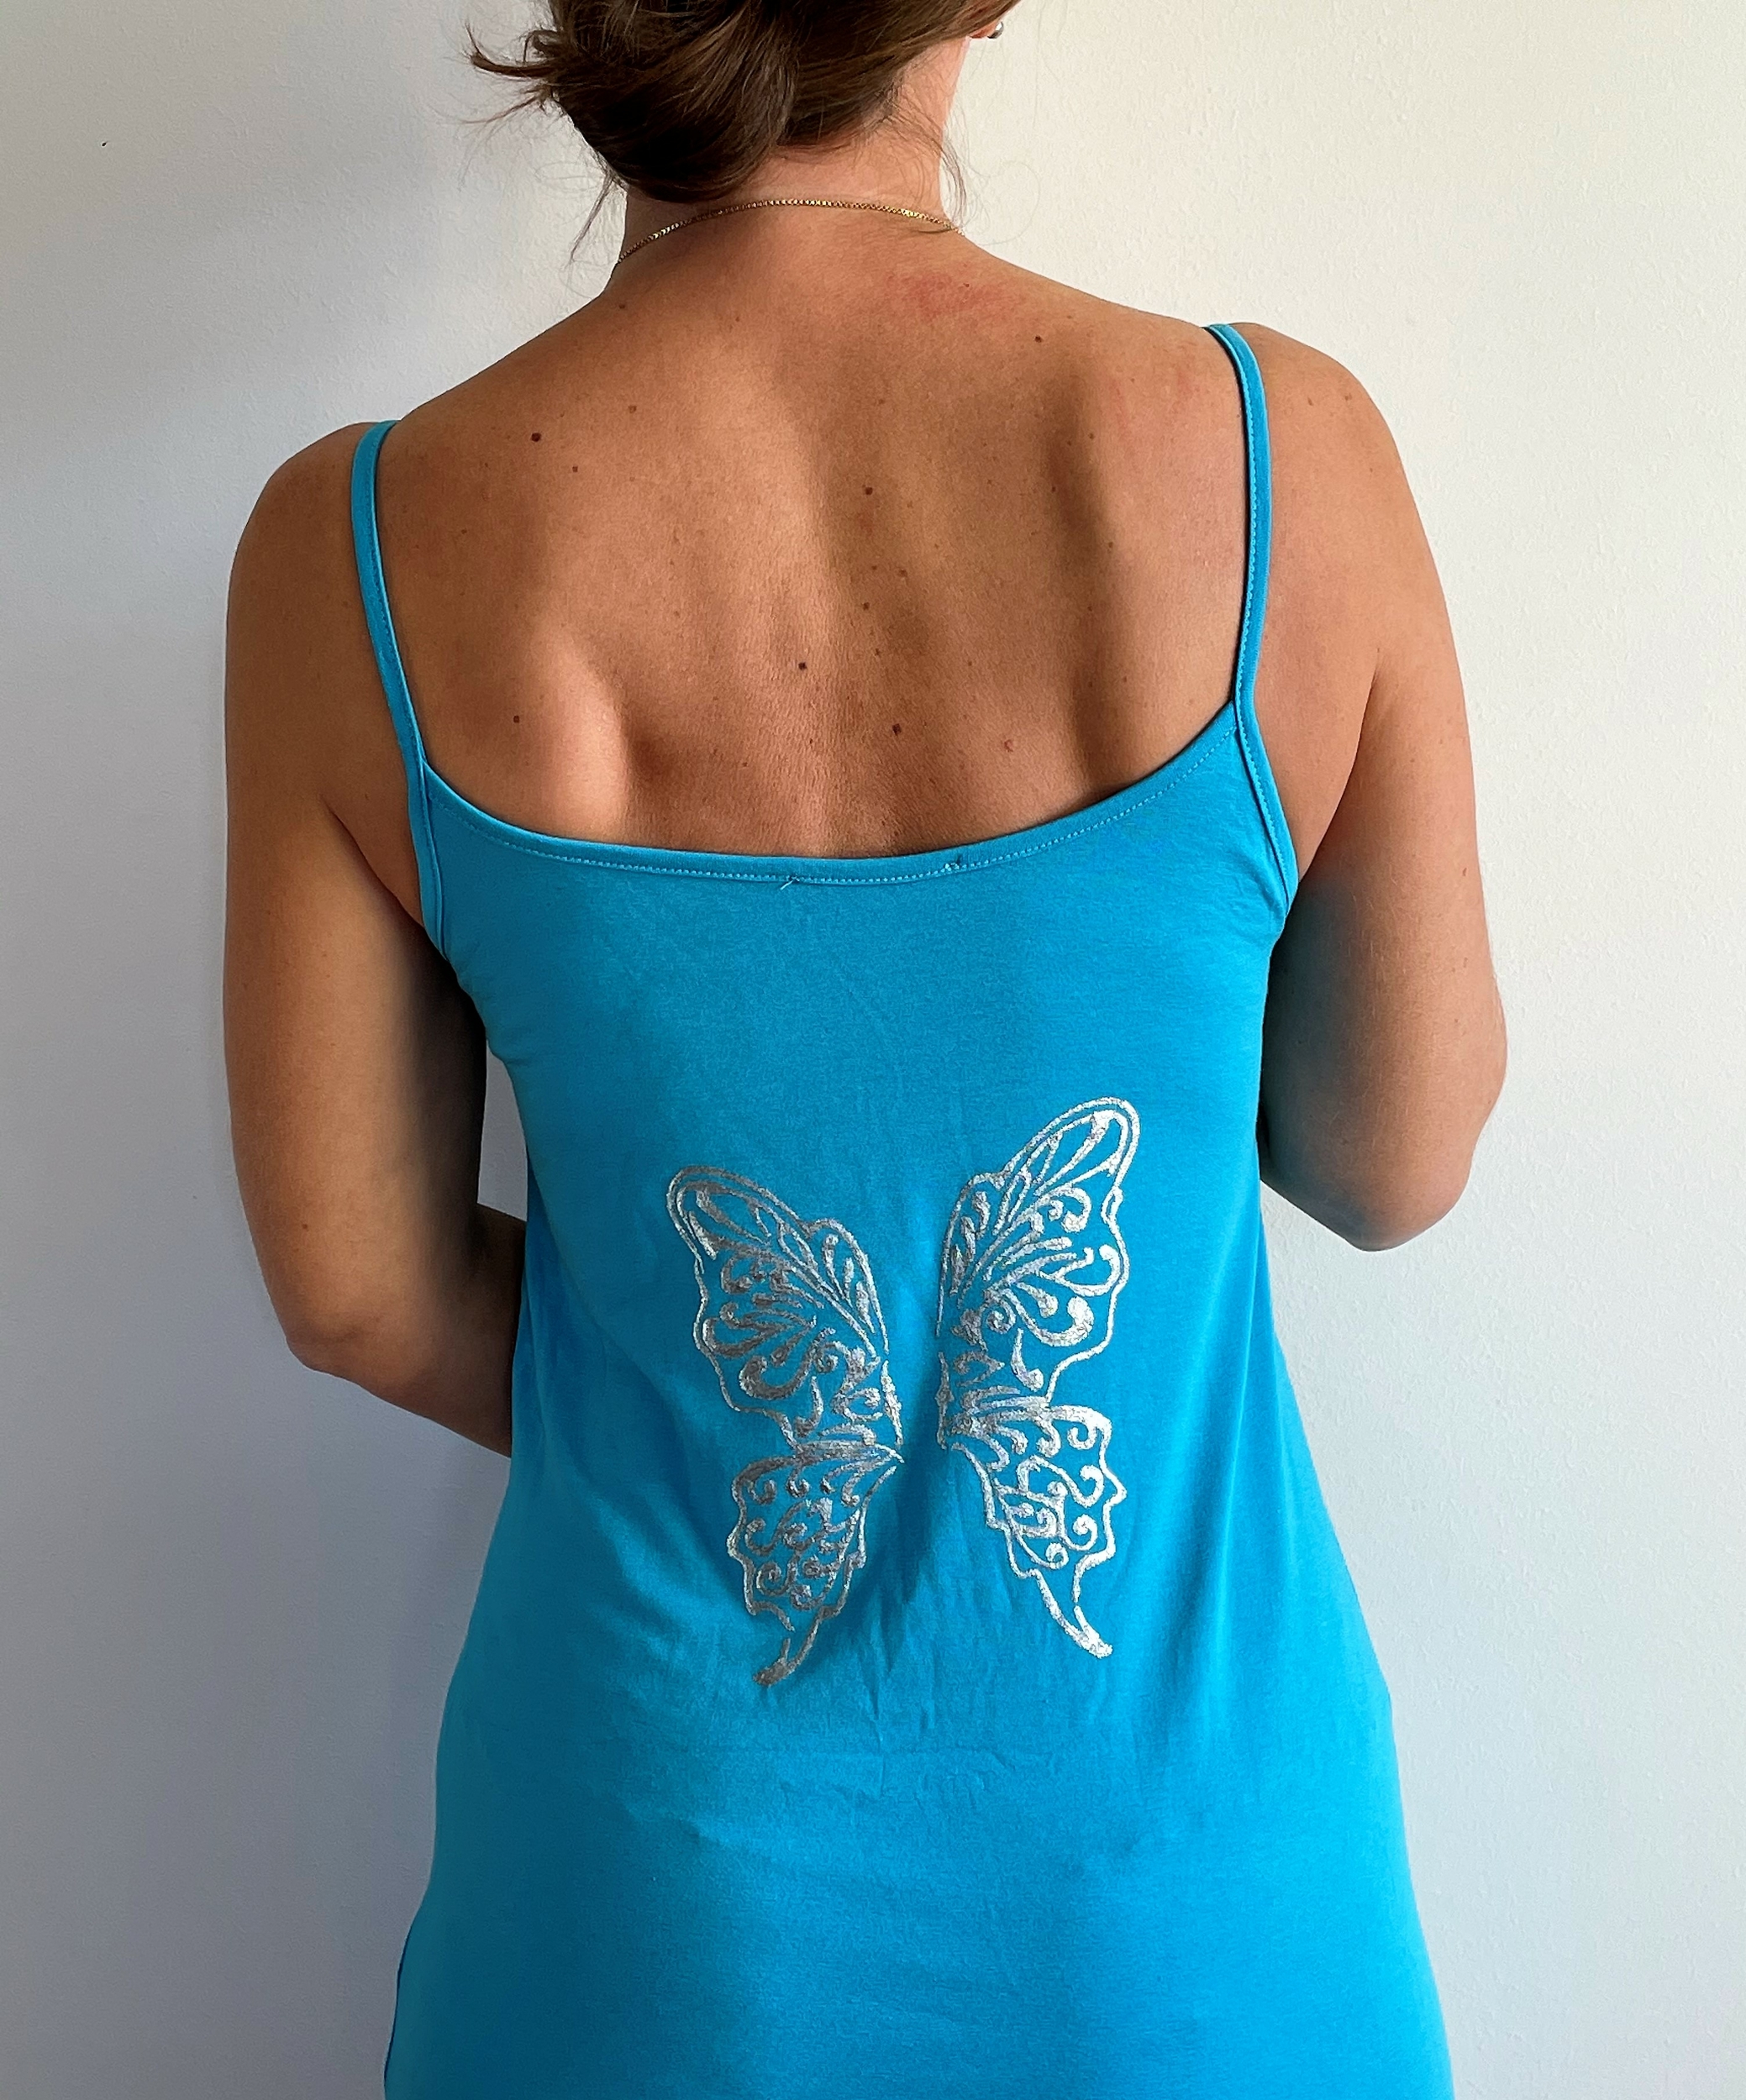 robe bleue avec ailes de papillons dans le dos (5)